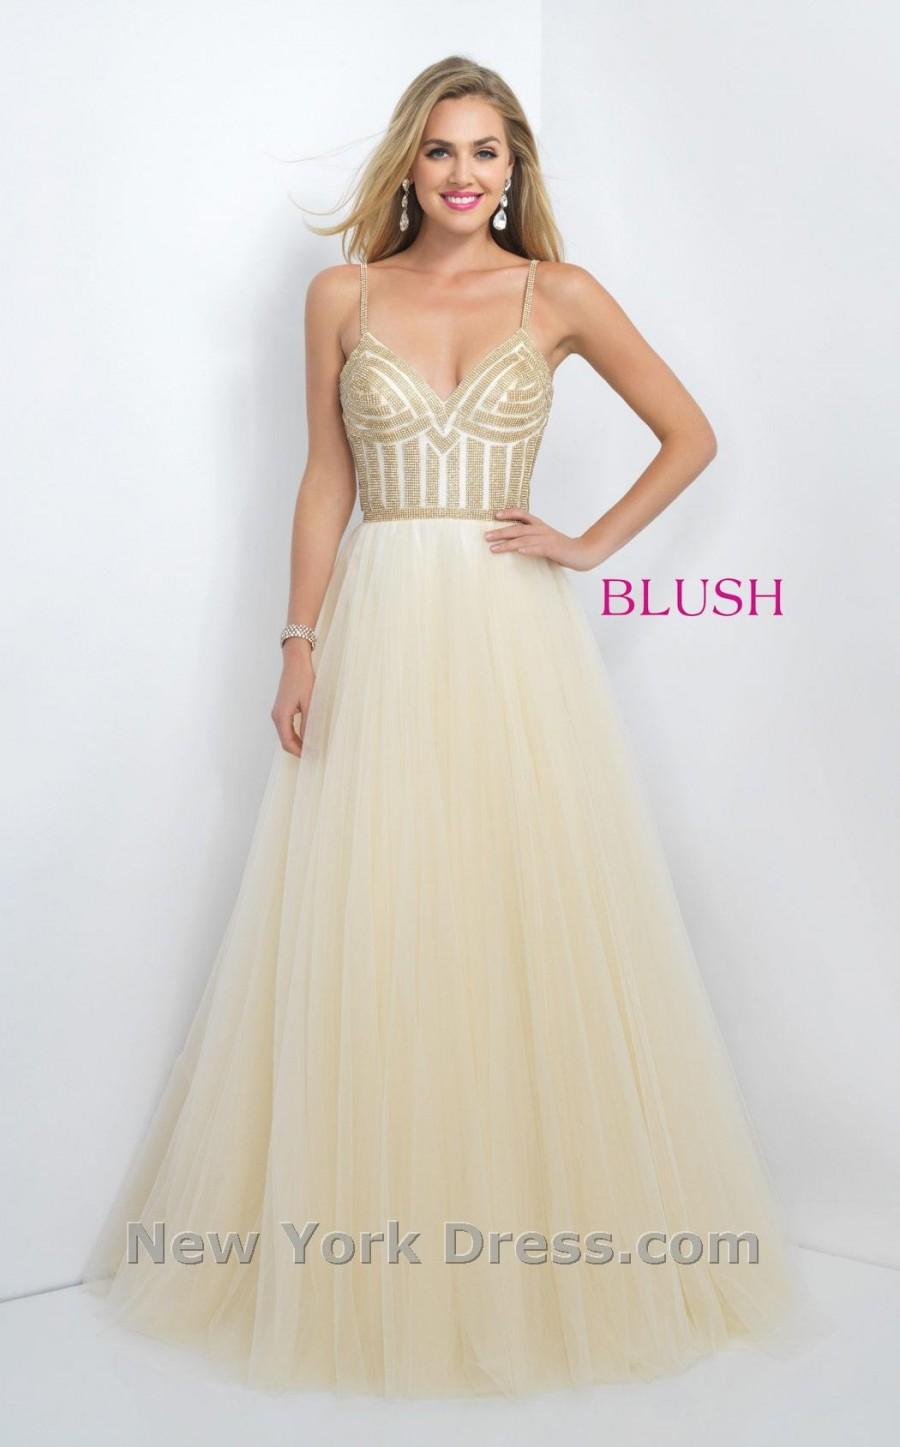 زفاف - Blush 5526 - Charming Wedding Party Dresses